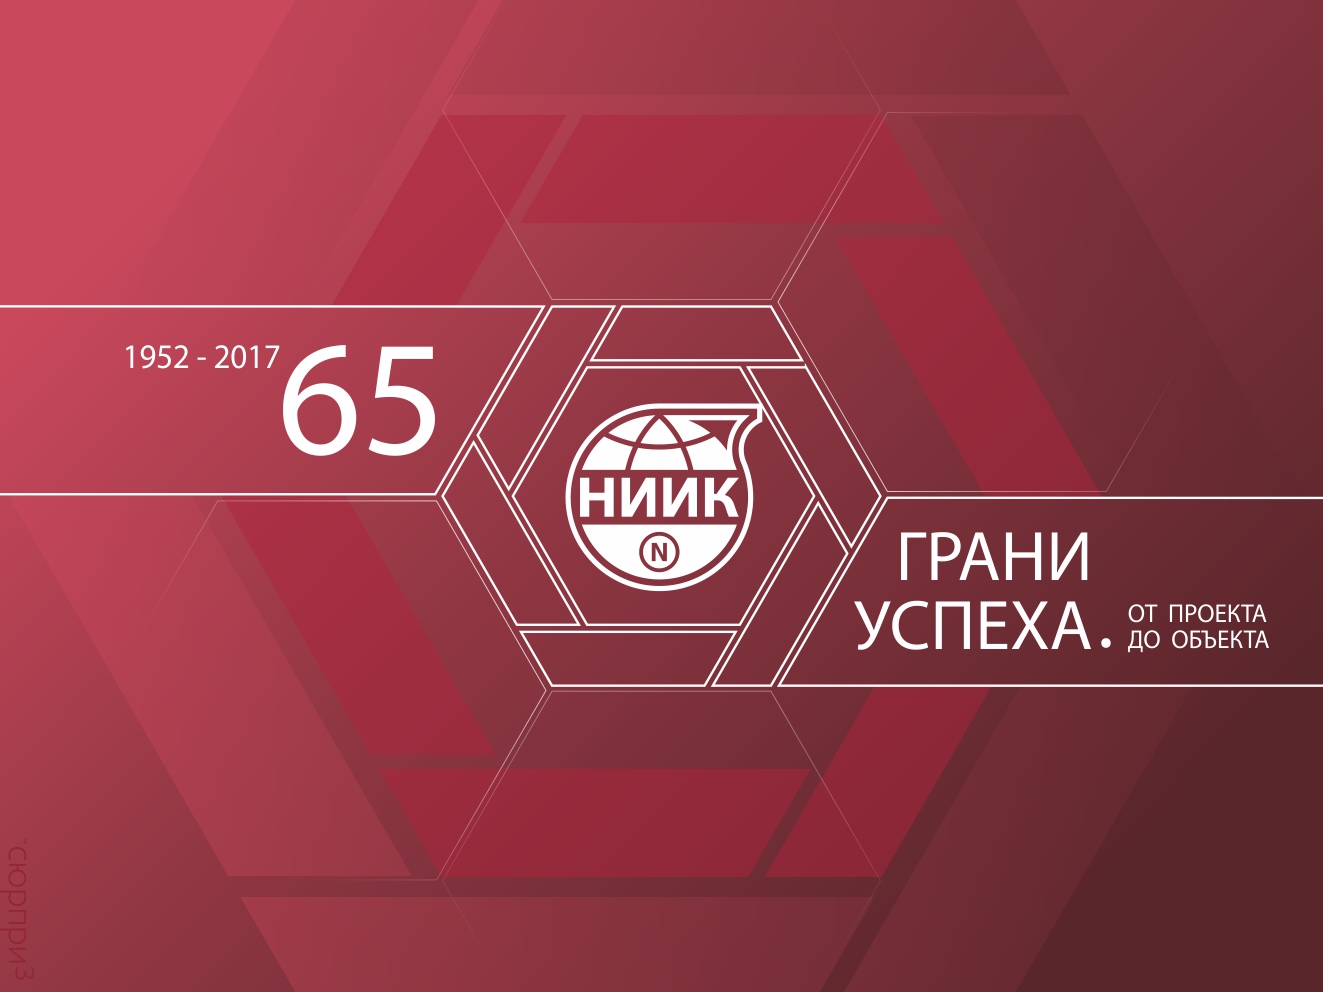 31 октября 2017 года ОАО «НИИК» исполняется 65 лет